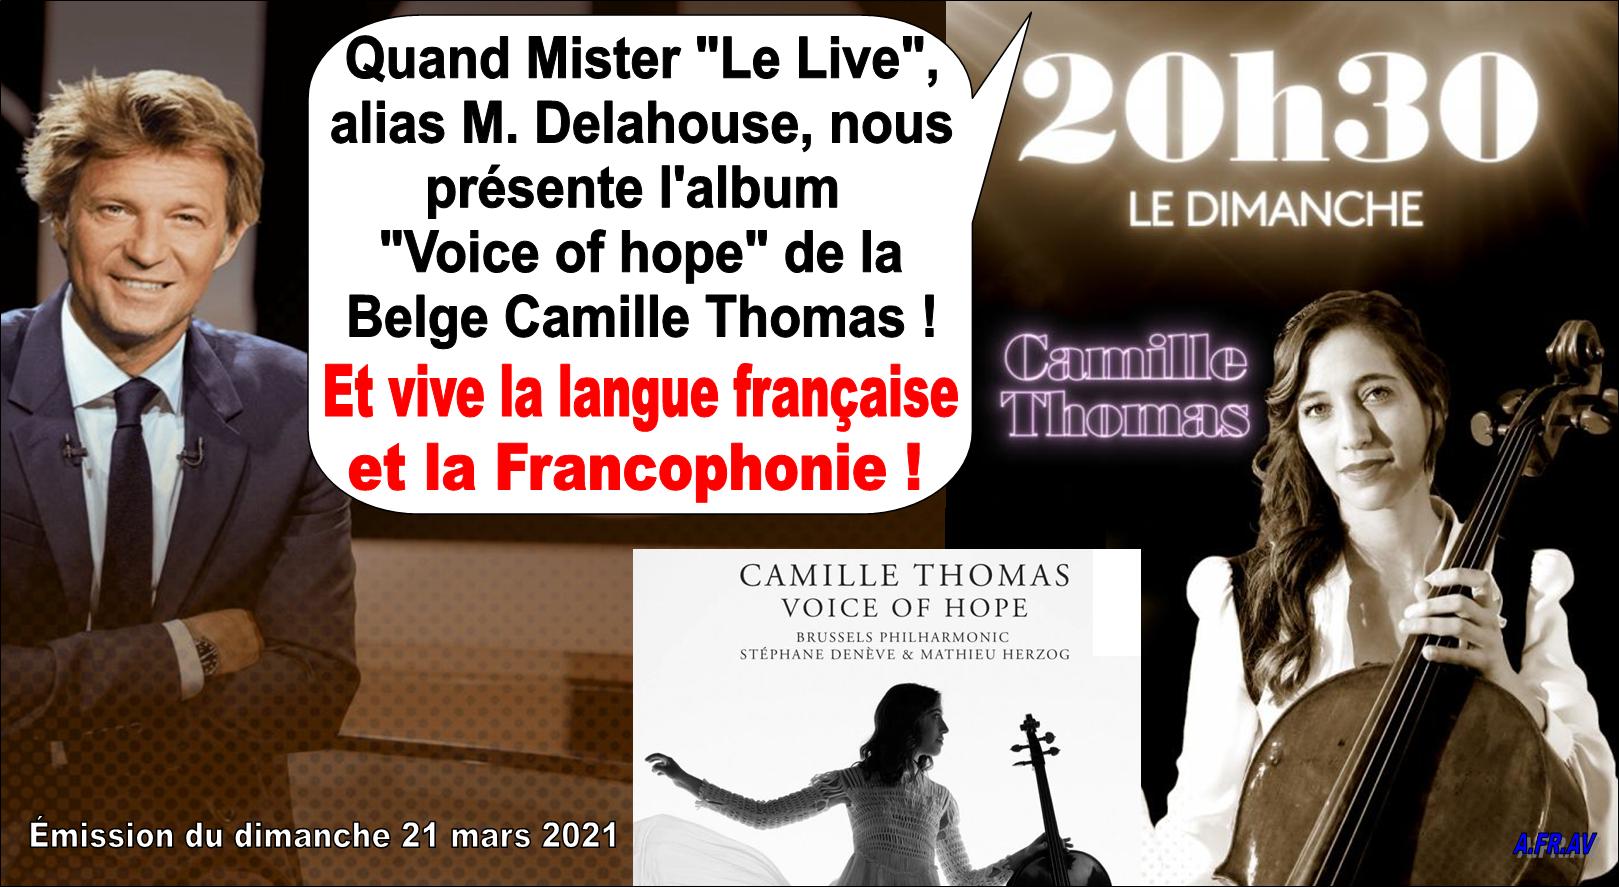 Laurent Delahousse et Camille Thomas, Voice of Hope sur France Télévisions